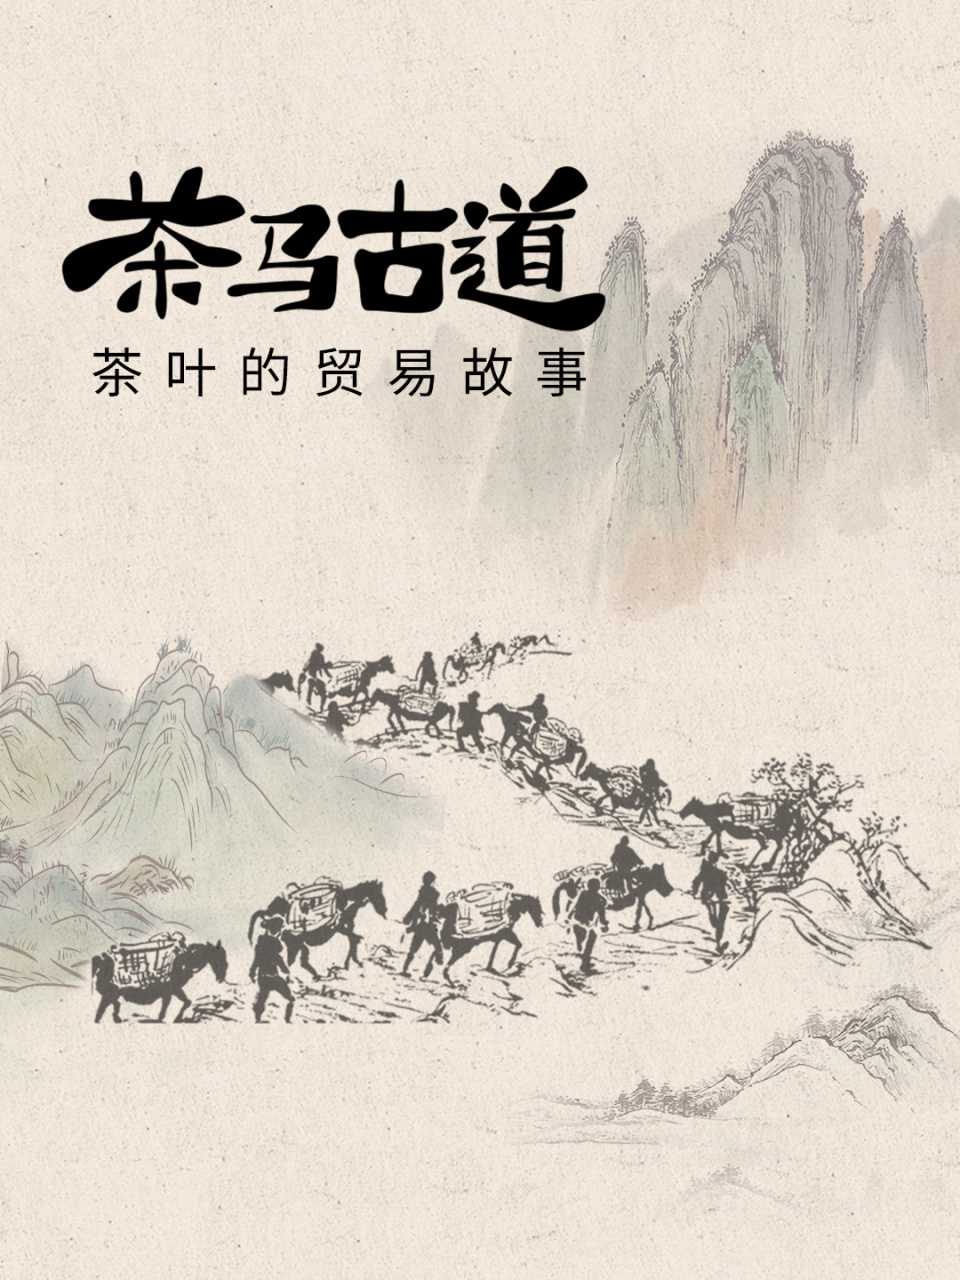 关于茶马古道  茶马古道,是指唐代以来为顺应当地人民需求,在中国西南